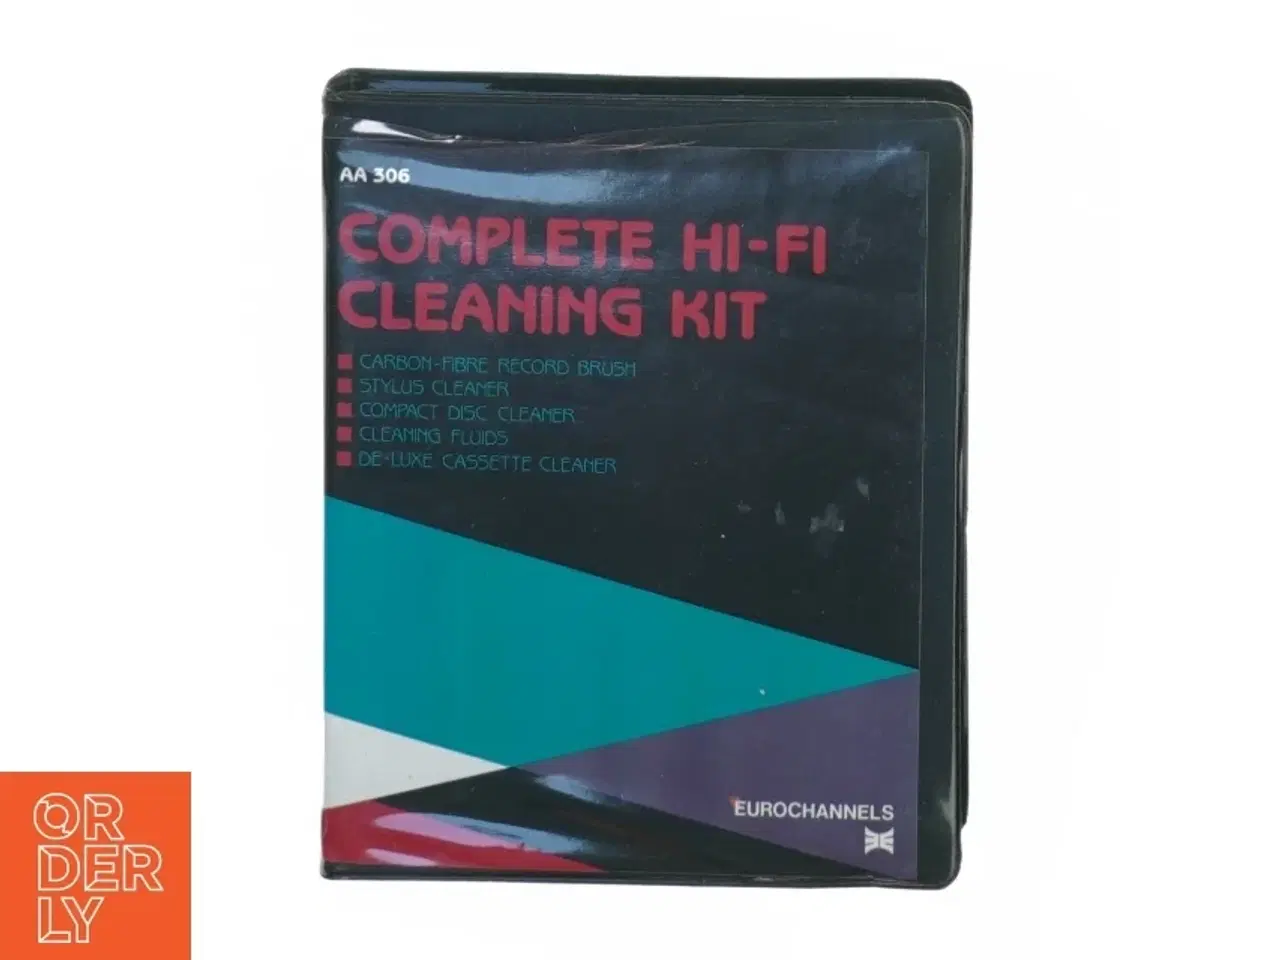 Billede 1 - Complete hif-i cleaning kit fra Eurochannels (str. 18 x 14 x 5 cm)